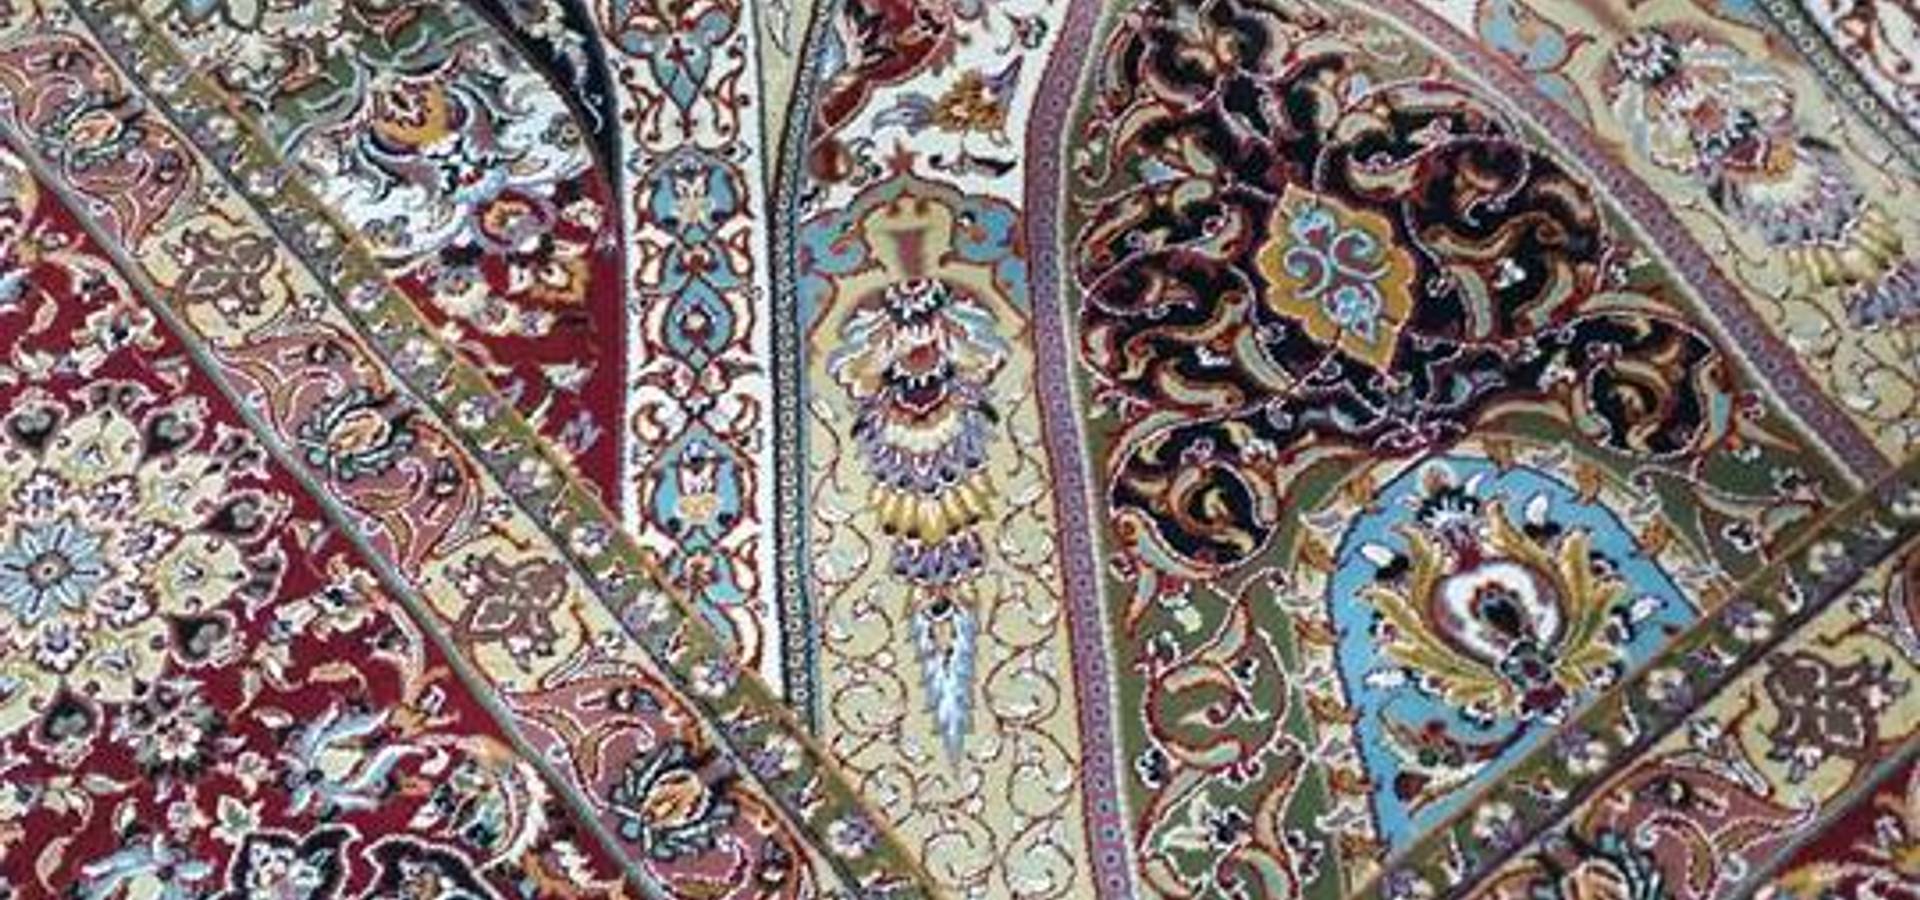 Karacahan Carpet Rug